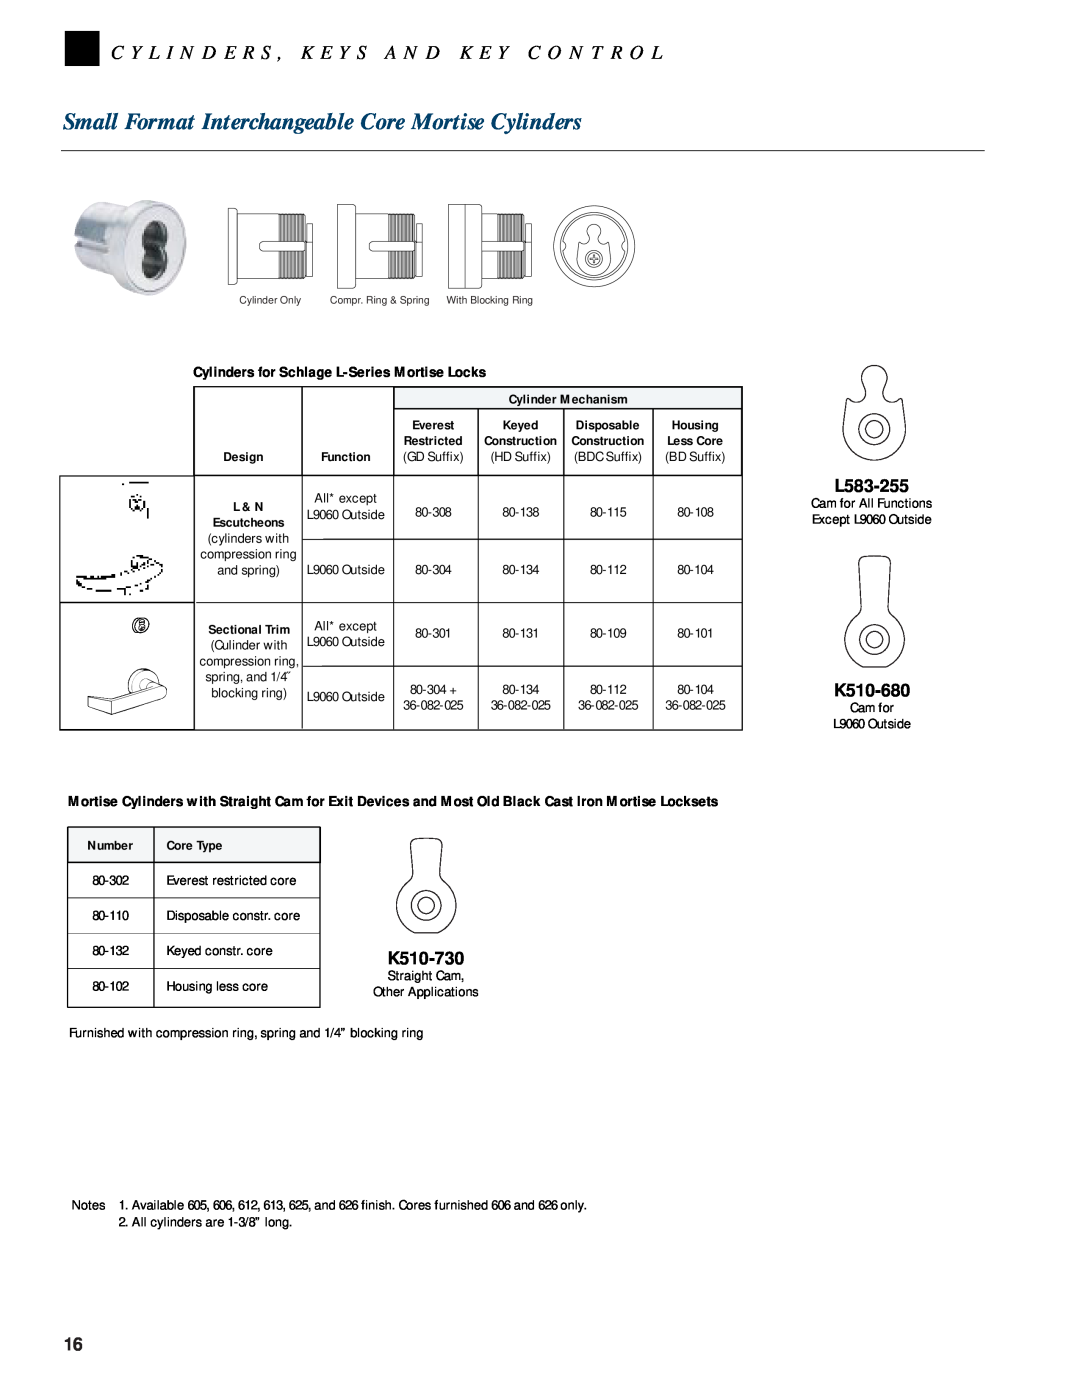 Schlage CYLINDERS manual L583-255, K510-680, K510-730, Cylinders for Schlage L-SeriesMortise Locks, Design, Function, L & N 